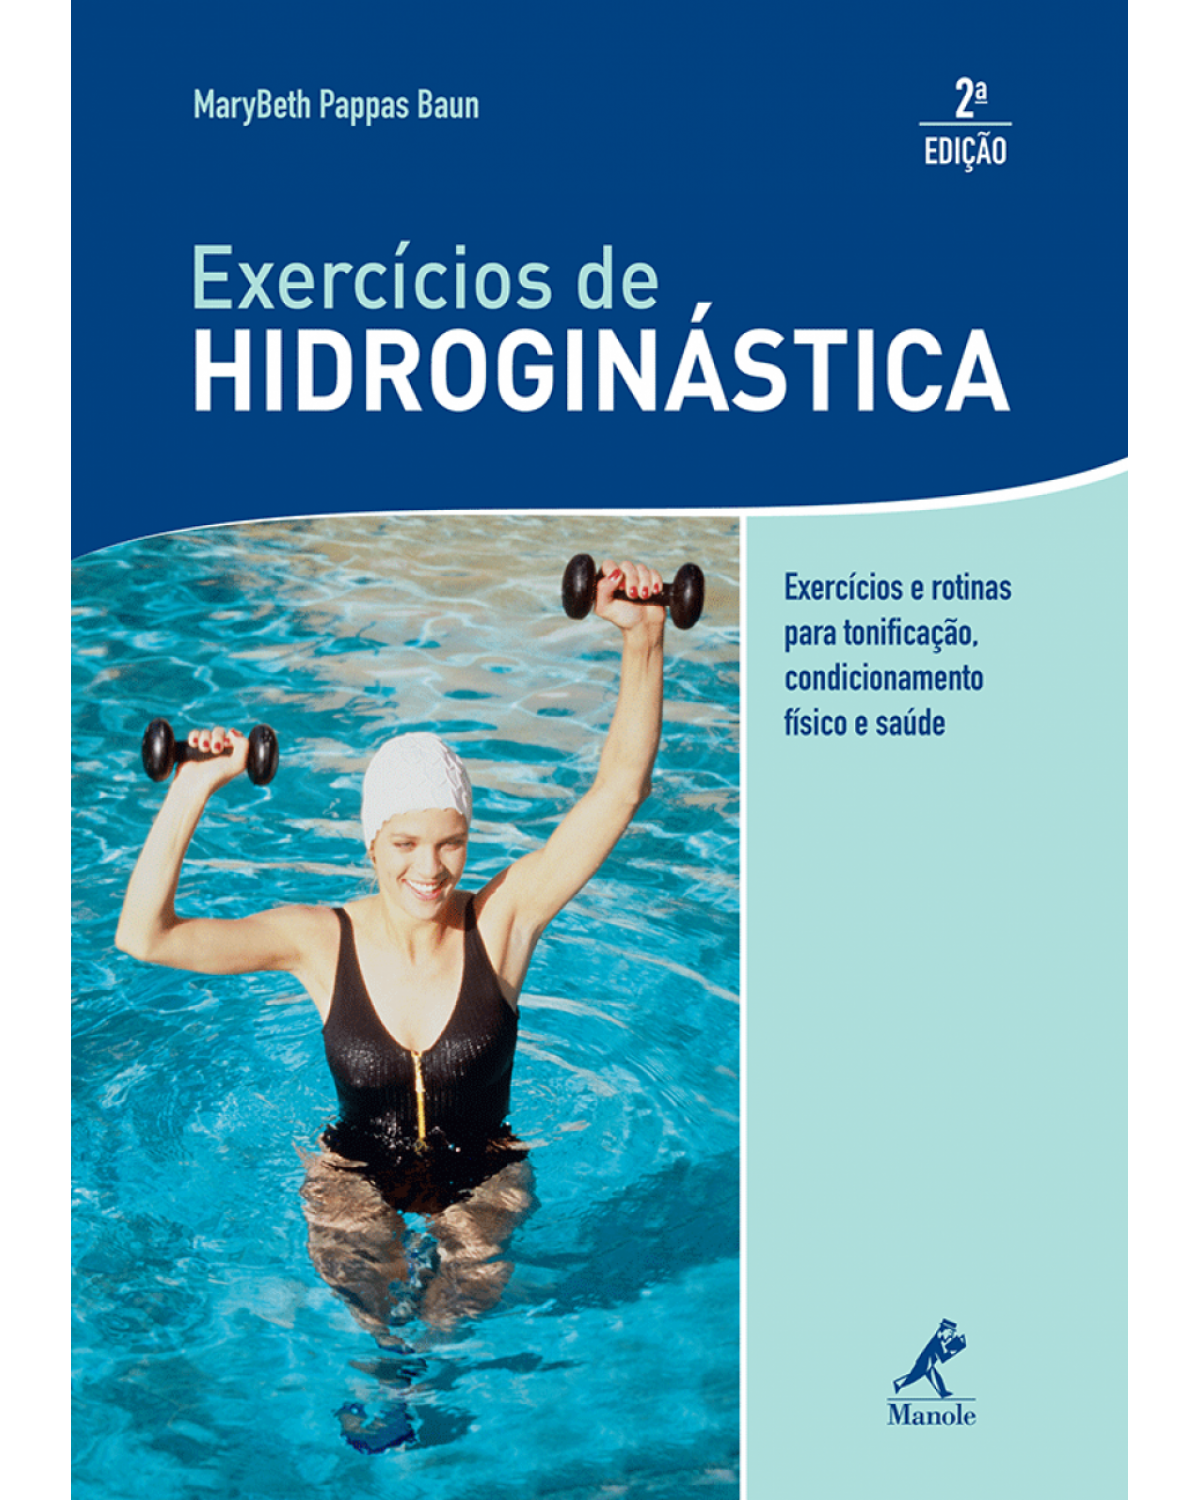 Exercícios de hidroginástica - Exercícios e rotinas para tonificação, condicionamento físico e saúde - 2ª Edição | 2010